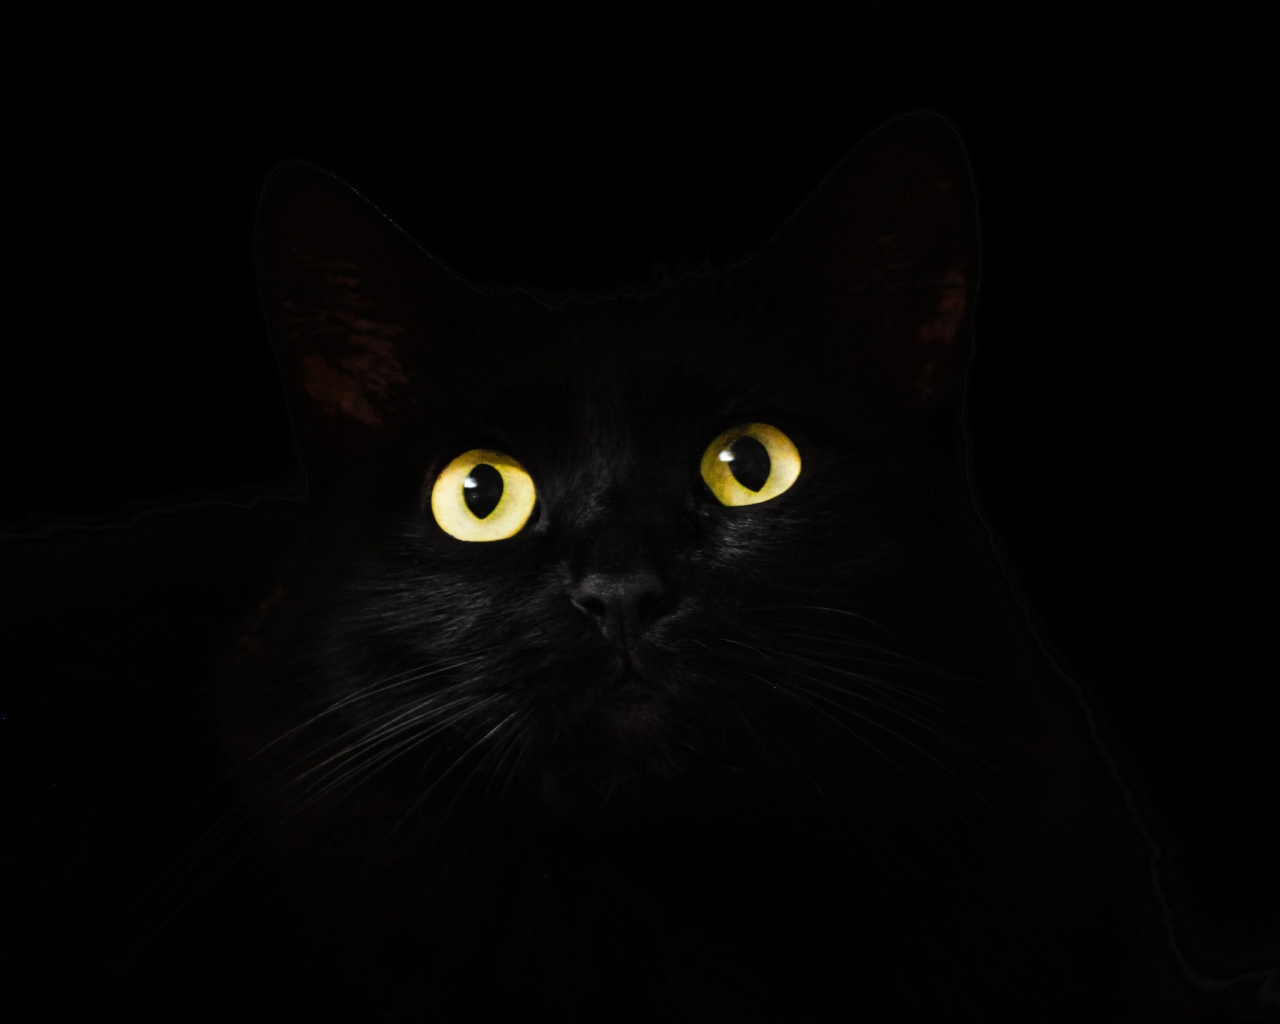 Большие желтые глаза кошки на черном фоне